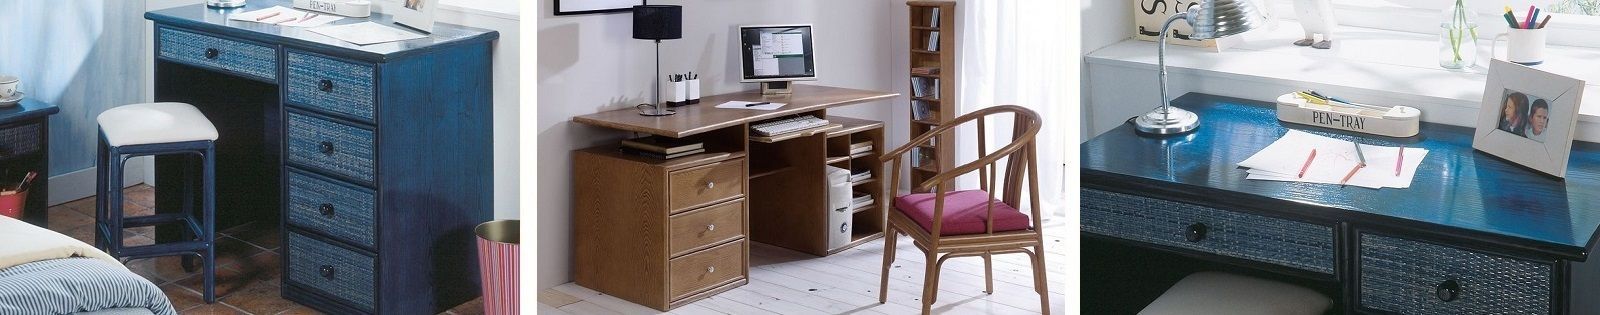 Bureaux en rotin : meubles haut de gamme de fabrication espagnole.